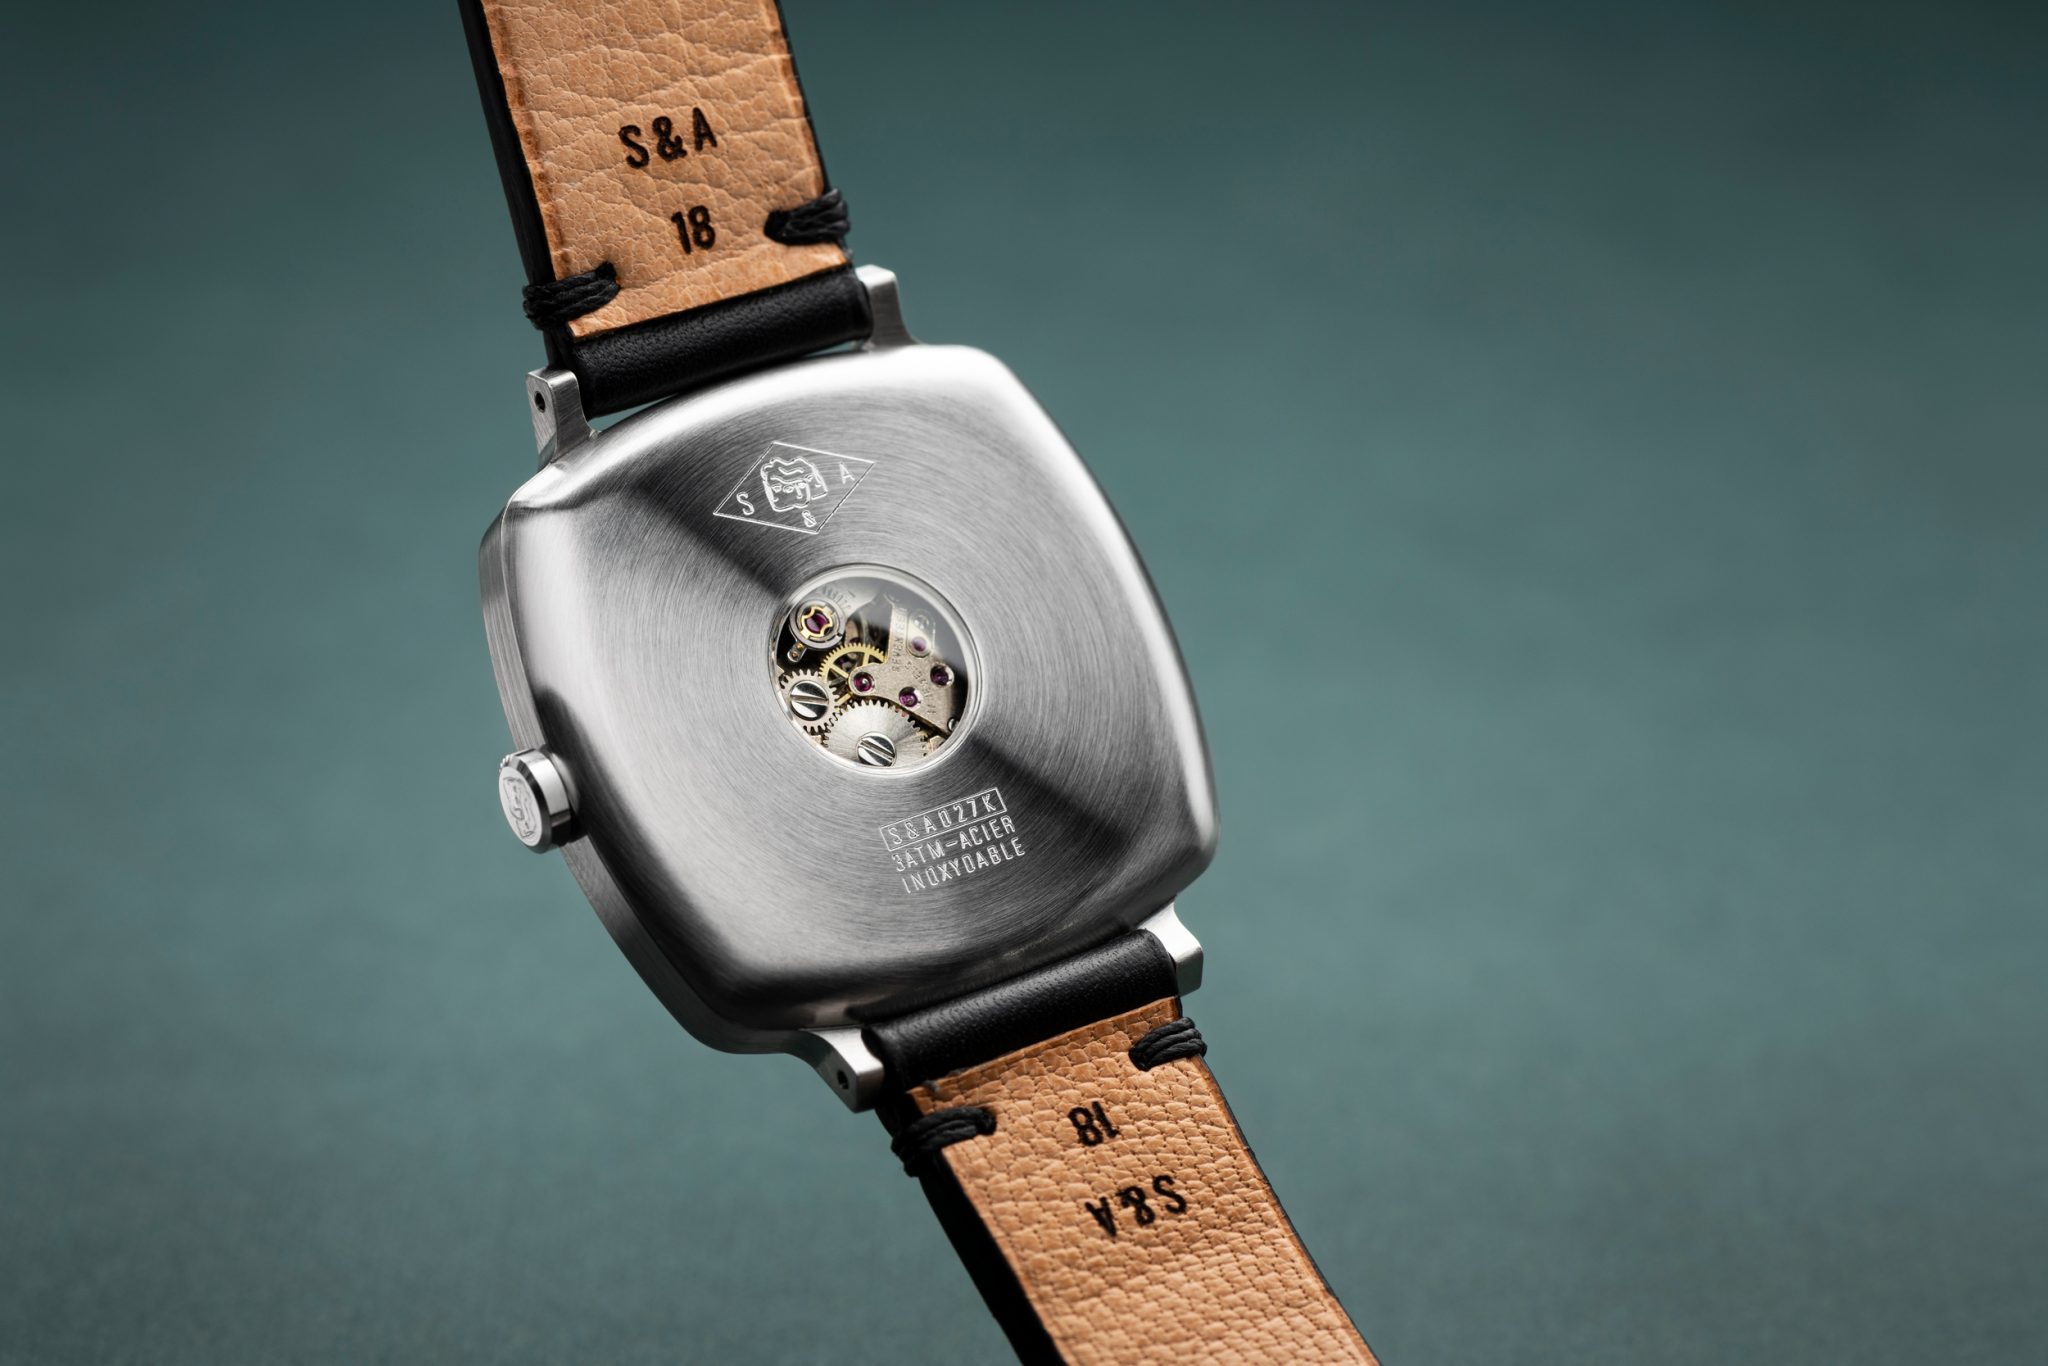 SEMPER & ADHUC, une marque de montres artisanales française